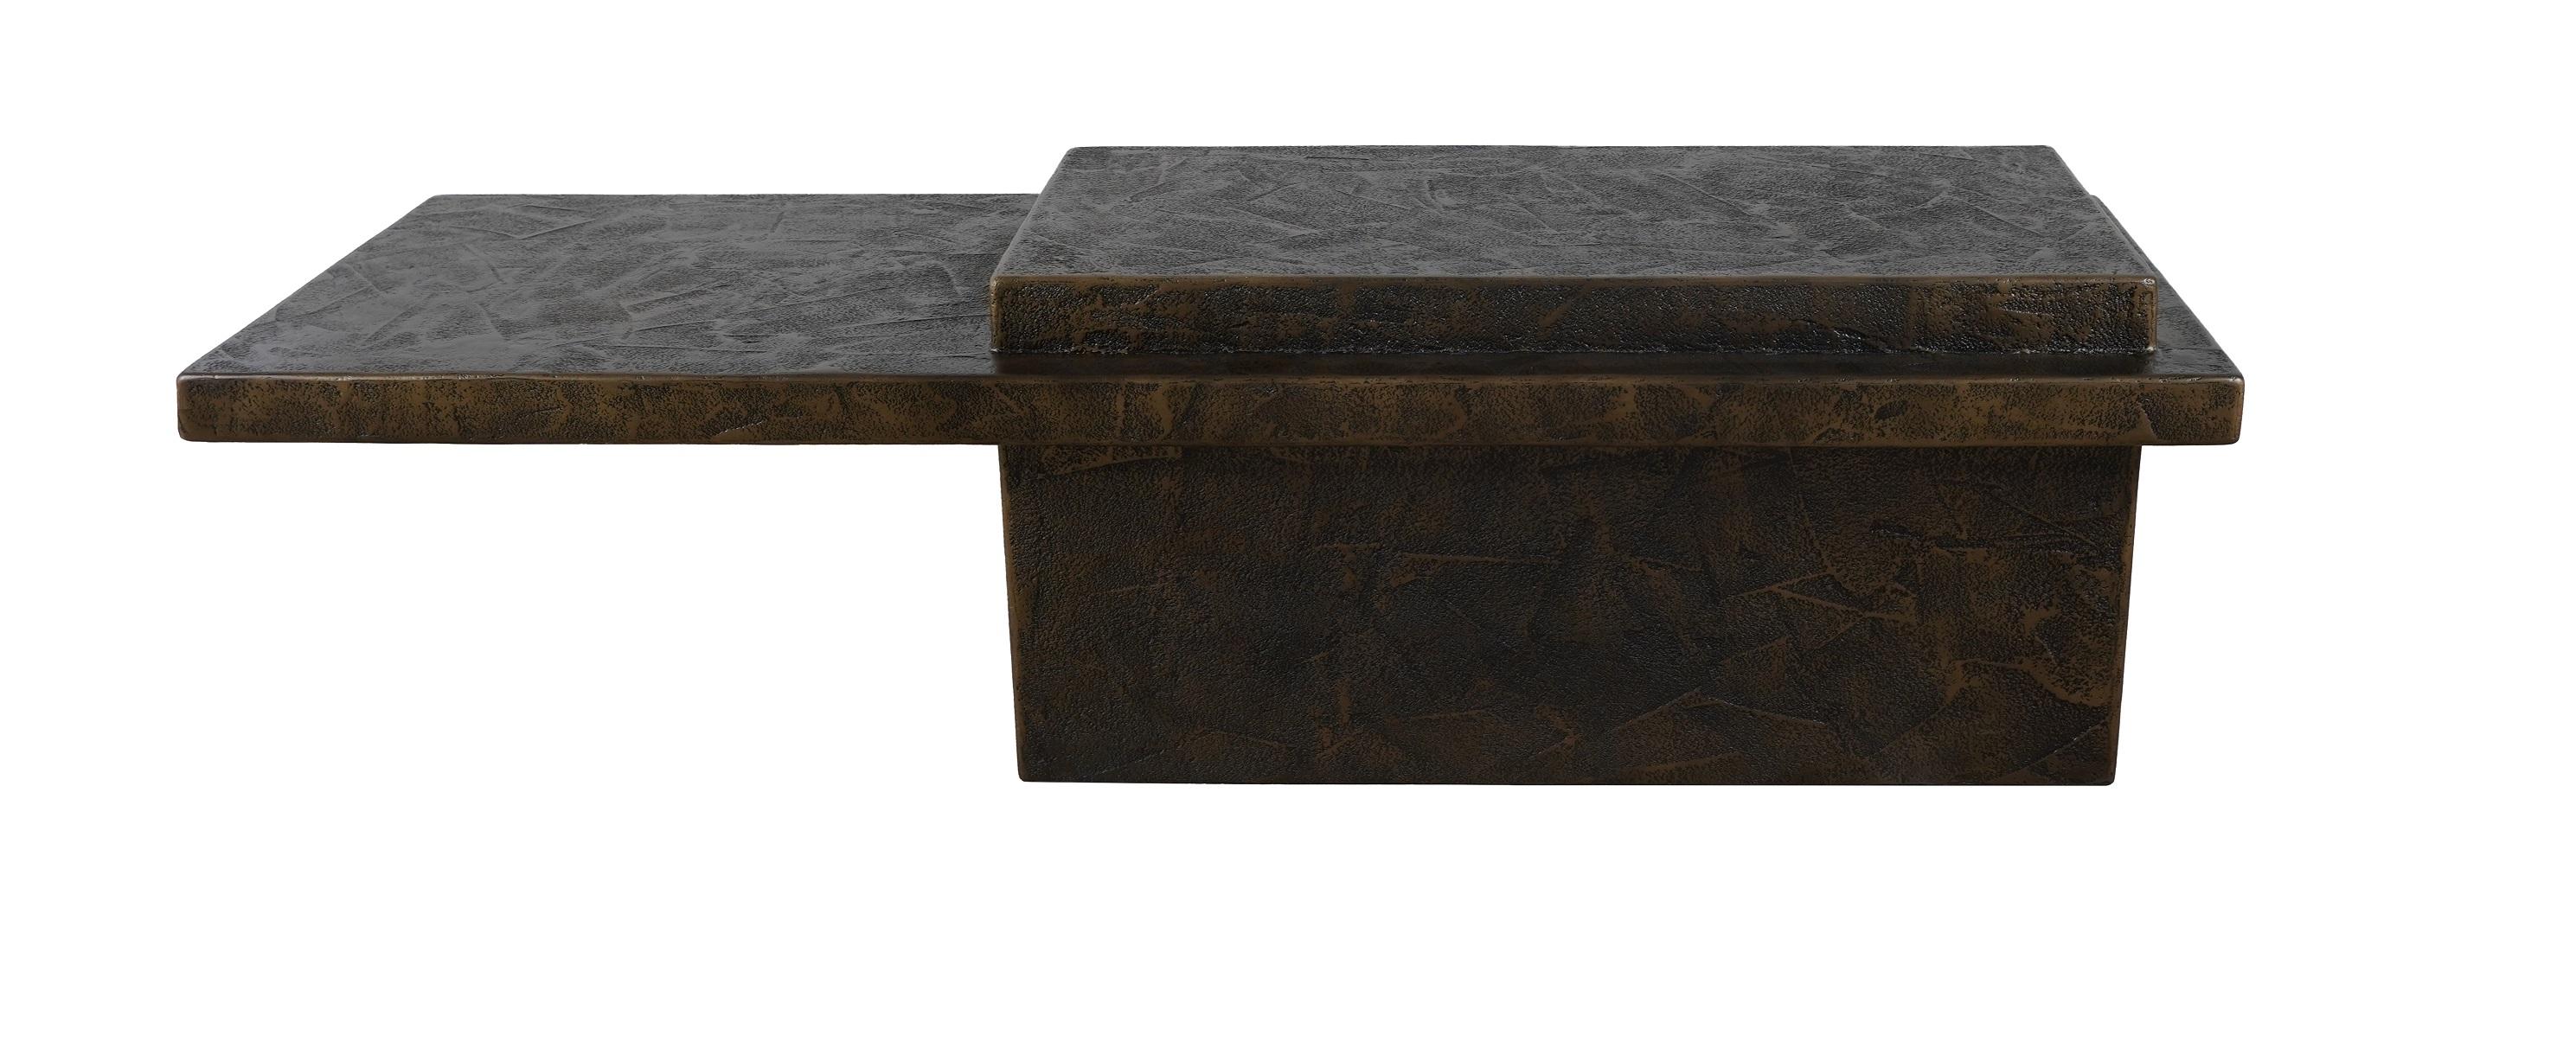 Cette table basse artisanale est fabriquée à partir d'un mélange composite de bois, de résine et de fibre de verre. Elle présente un design distinctif inspiré de l'esthétique brute et sans fioritures de l'école de design brutaliste. S'inspirant des